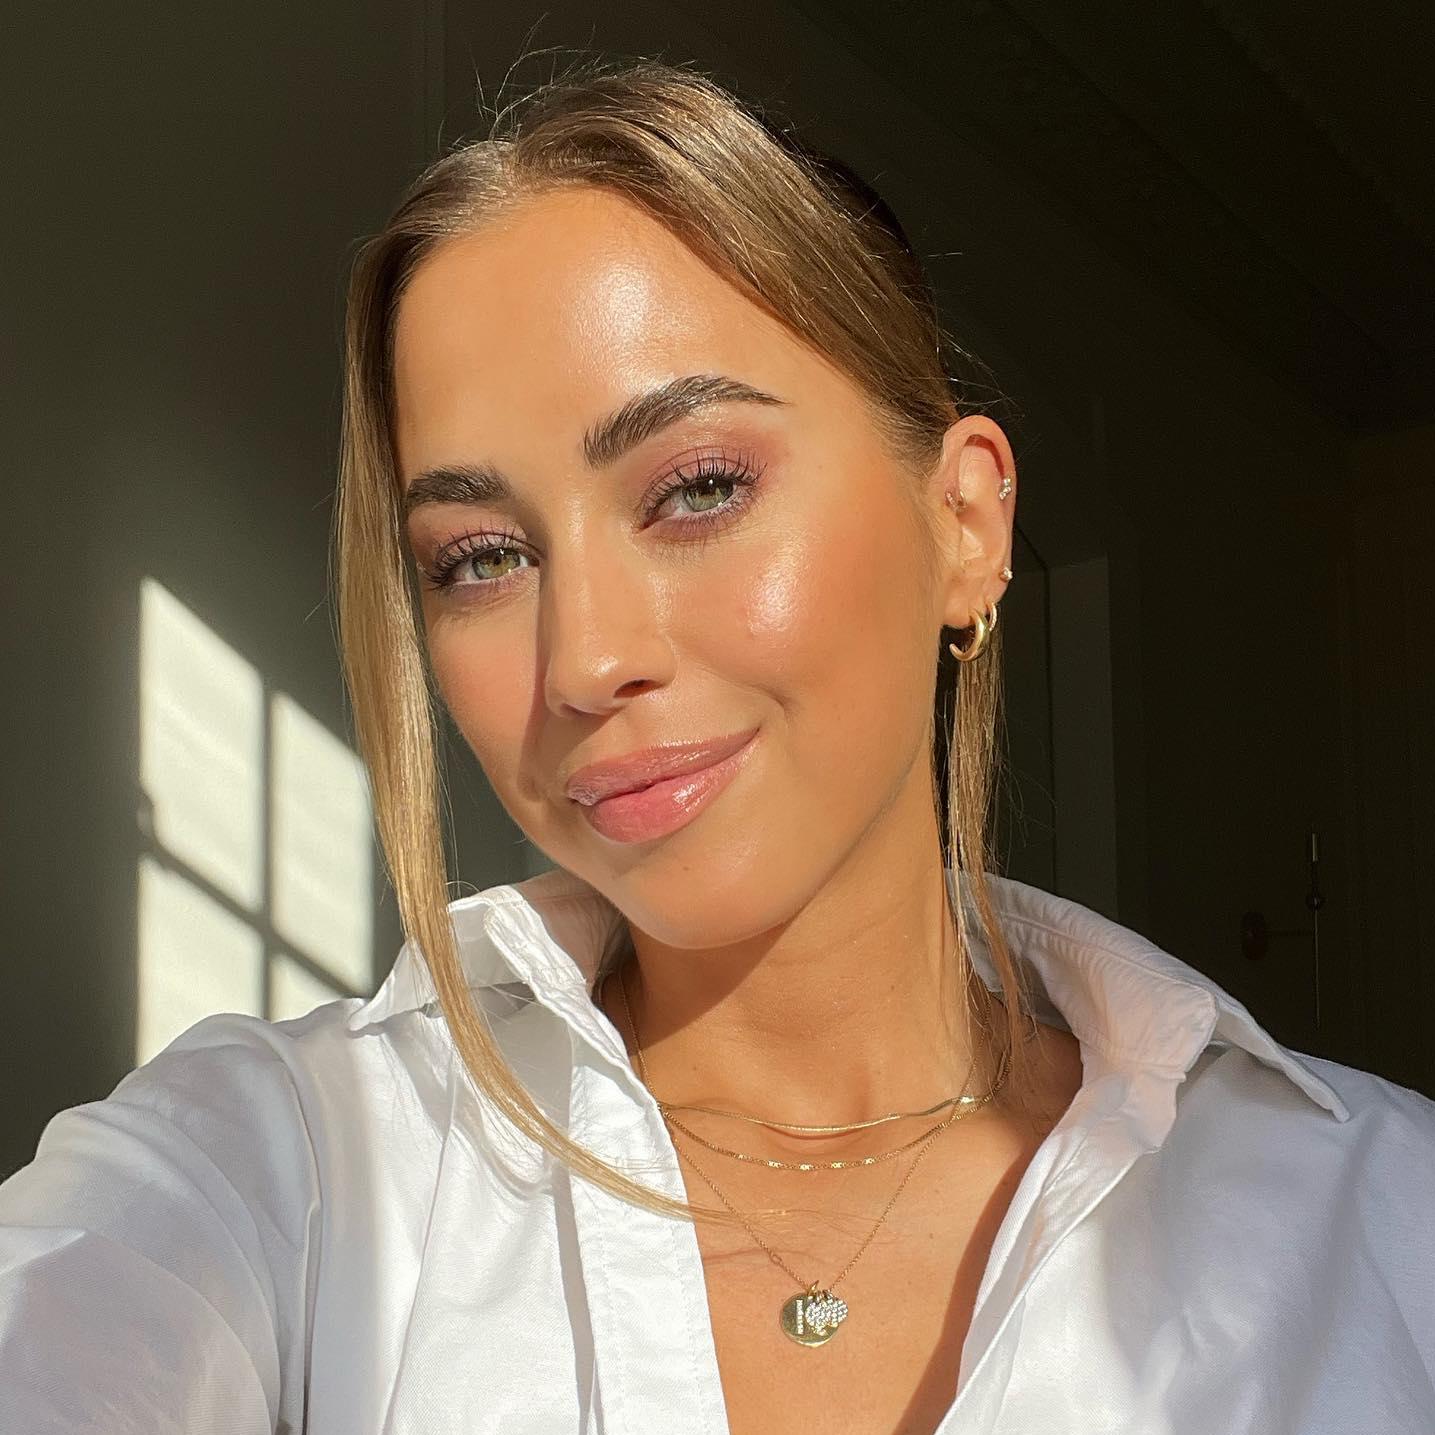 La influencer Kenza Zouiten Subosic en un selfie con un maquillaje en tonos rosas y el pelo con dos mechones frontales